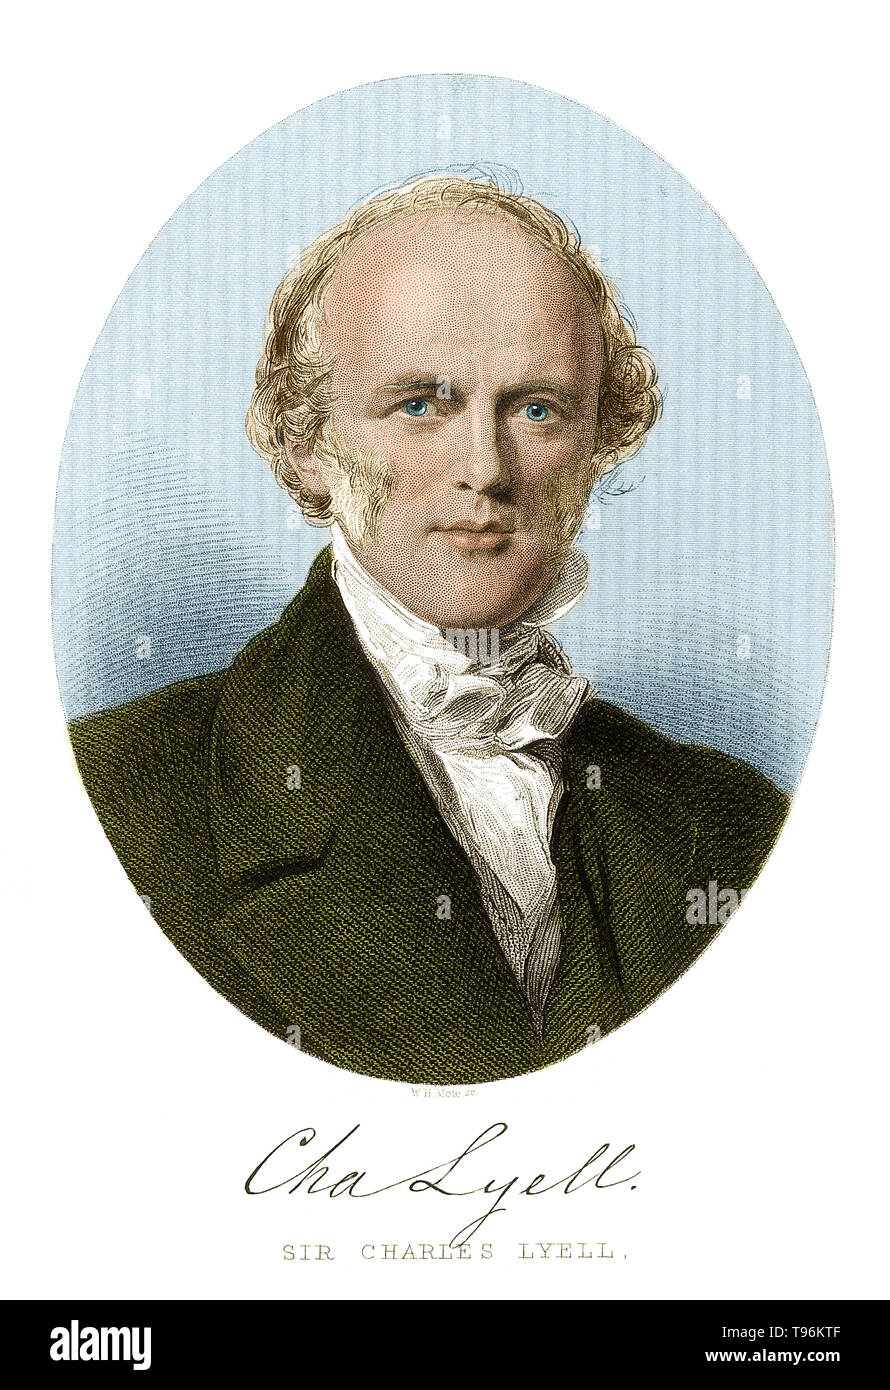 Charles Lyell (Novembre 14, 1797 - février 22, 1875) est un géologue écossais. À première Lyell s'est lancé dans une carrière juridique, mais ses intérêts en géologie ont mené à sa nomination comme secrétaire de la Geological Society en 1823. En 1830-33, il publie son chef-d'œuvre en trois volumes, les principes de la géologie. Dans ce cours, il a fourni la preuve pour appuyer le principe de l'Uniformitarianisme a déclaré par James Hutton. Banque D'Images